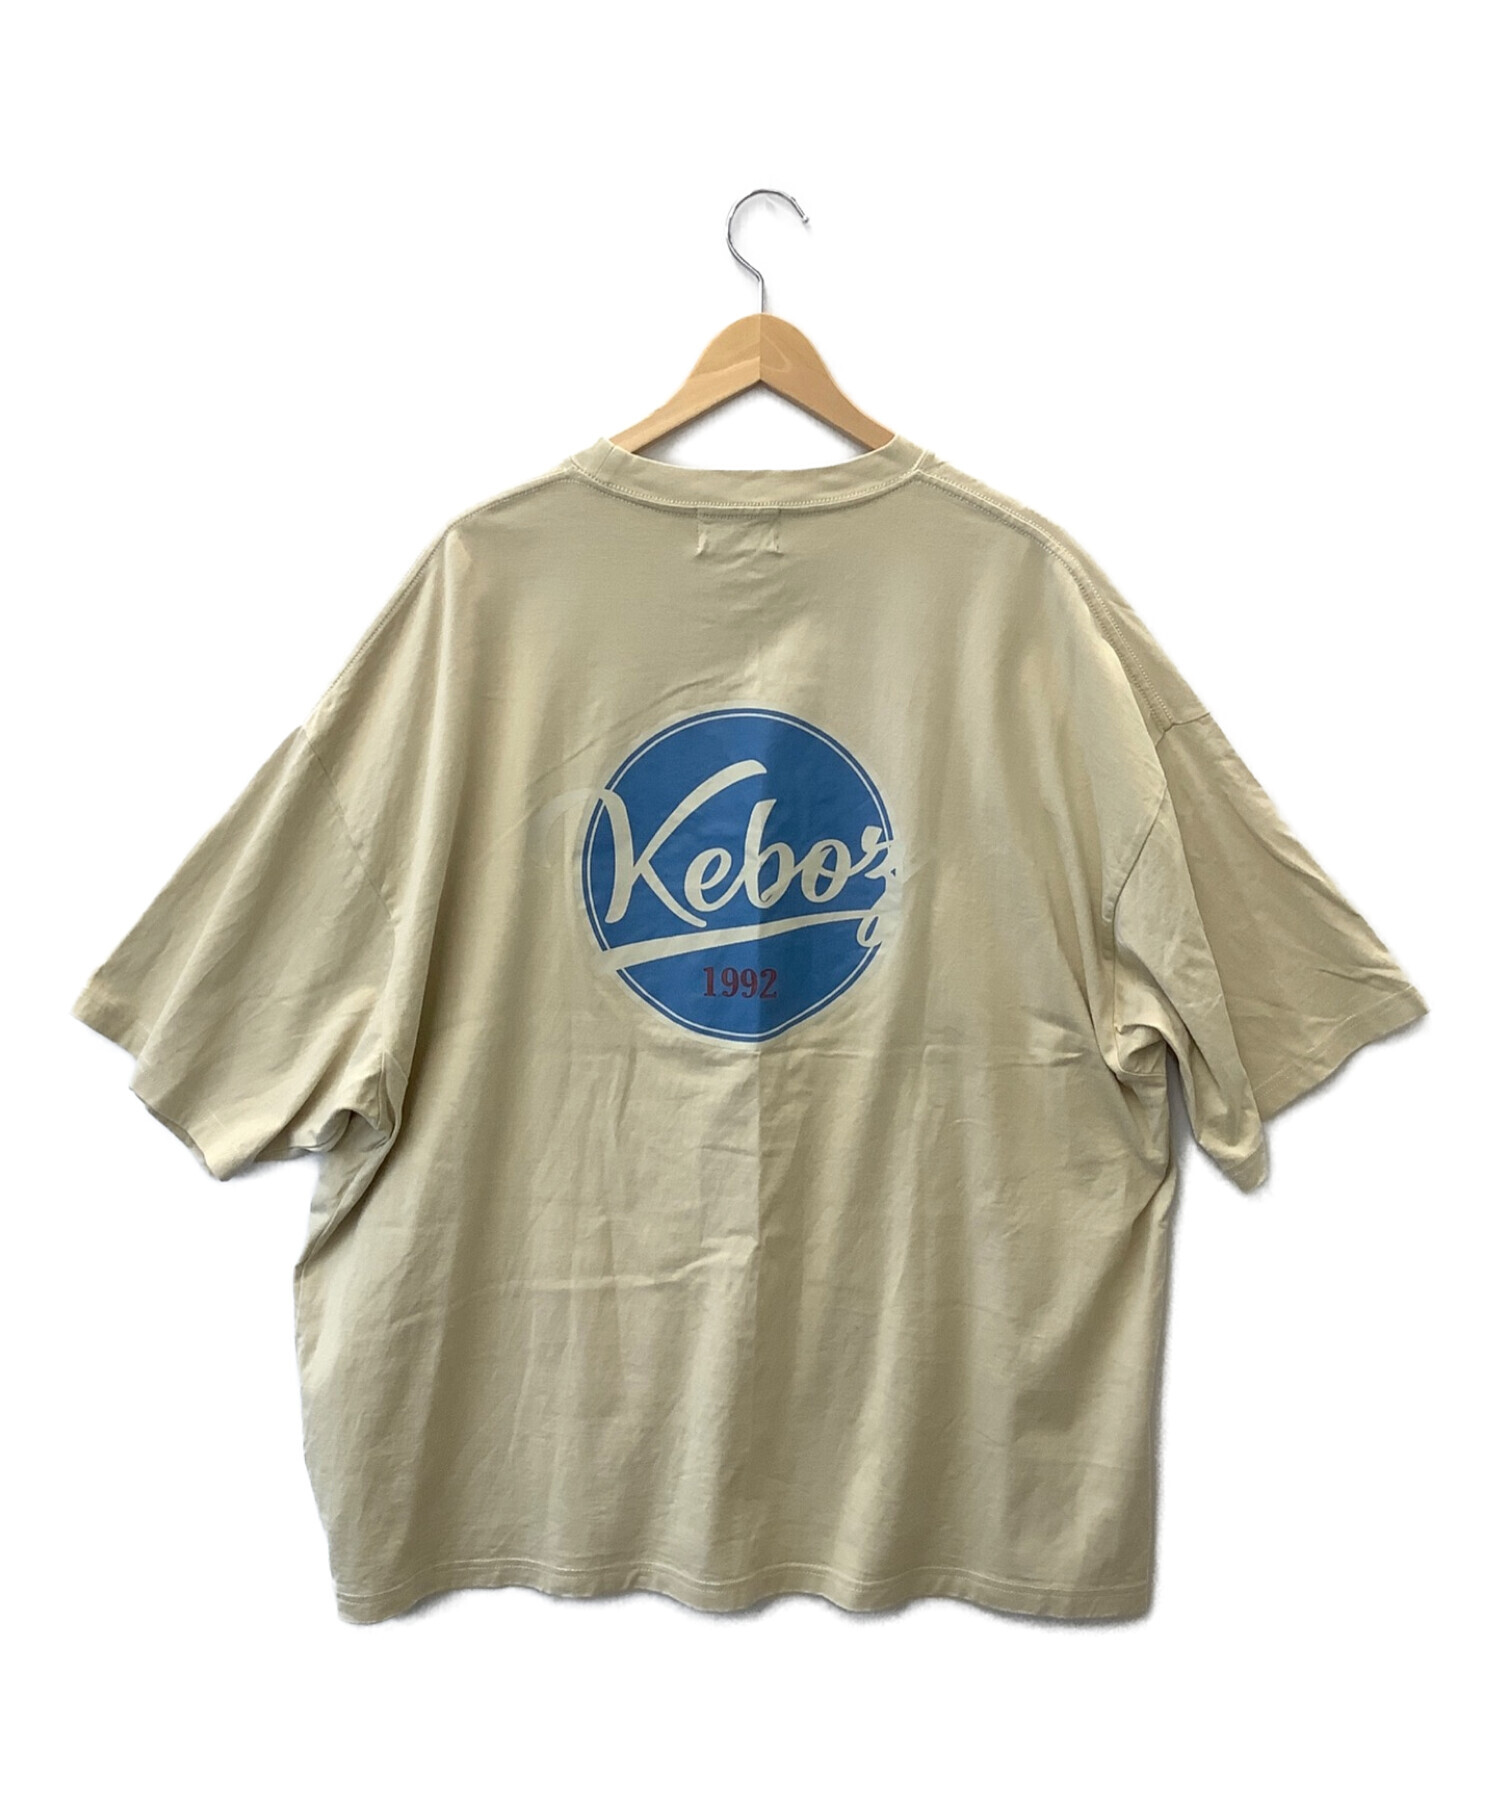 【セール】keboz ケボズ 半袖Tシャツ ベージュ